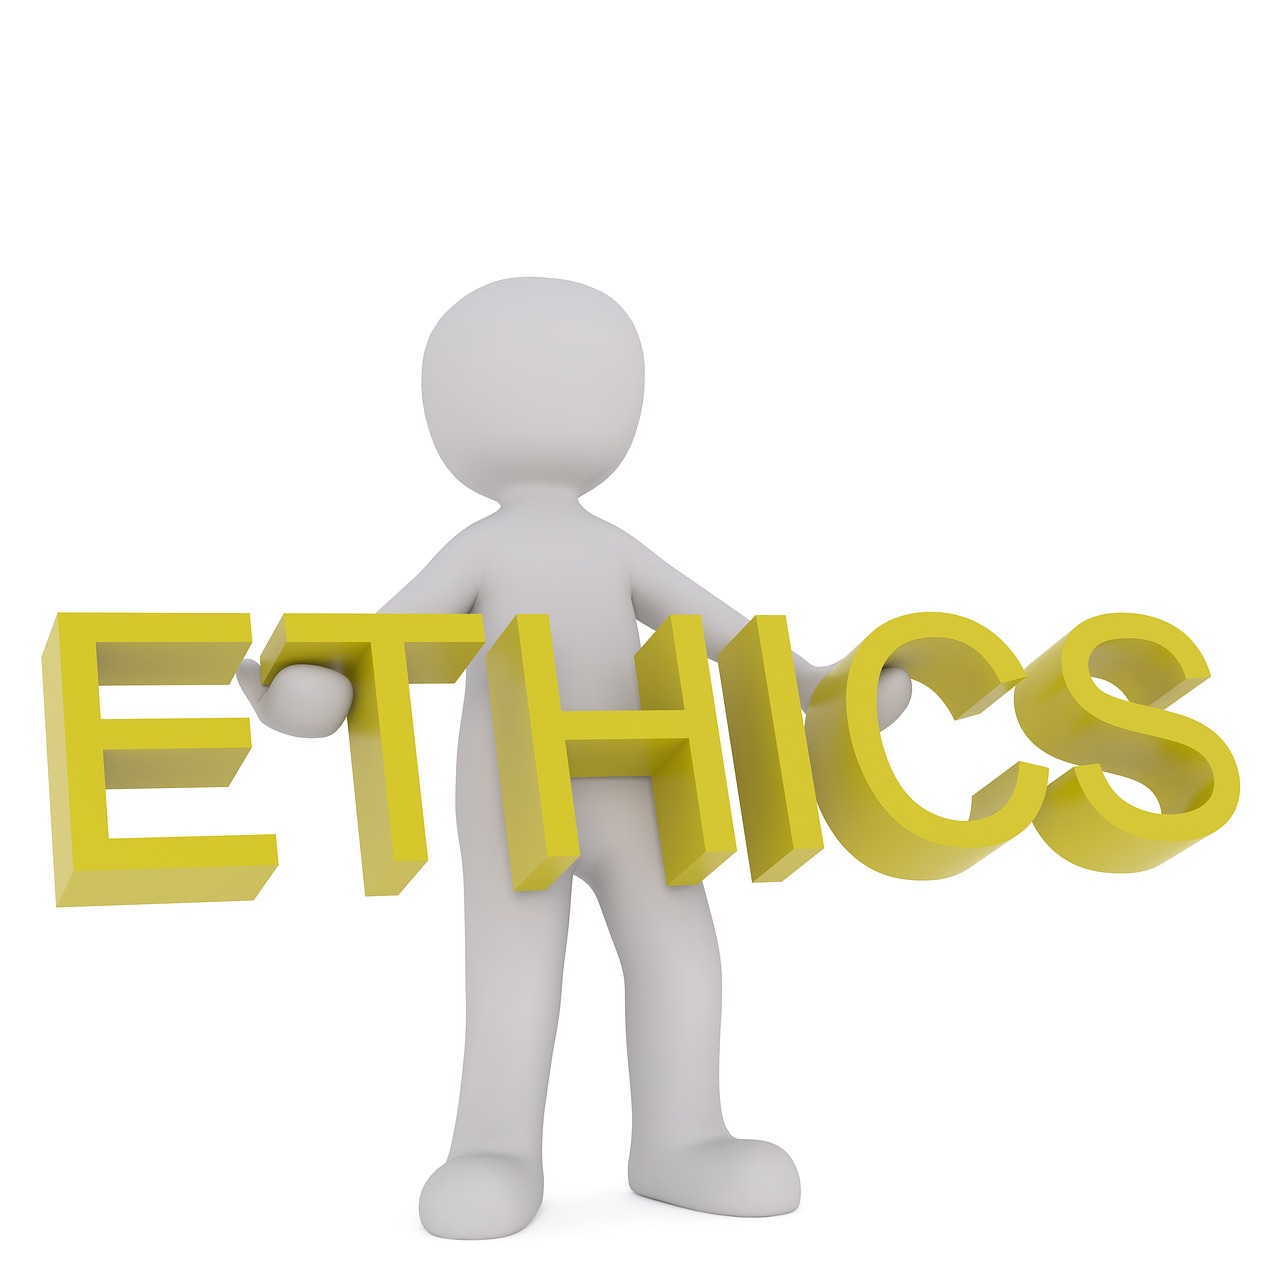 Etika, Moralė, Patikimumas, Žmonija, Teisingumas, Aiškumas, Nuoširdumas, Sąžiningumas, Skaidrumas, Sąžiningumas